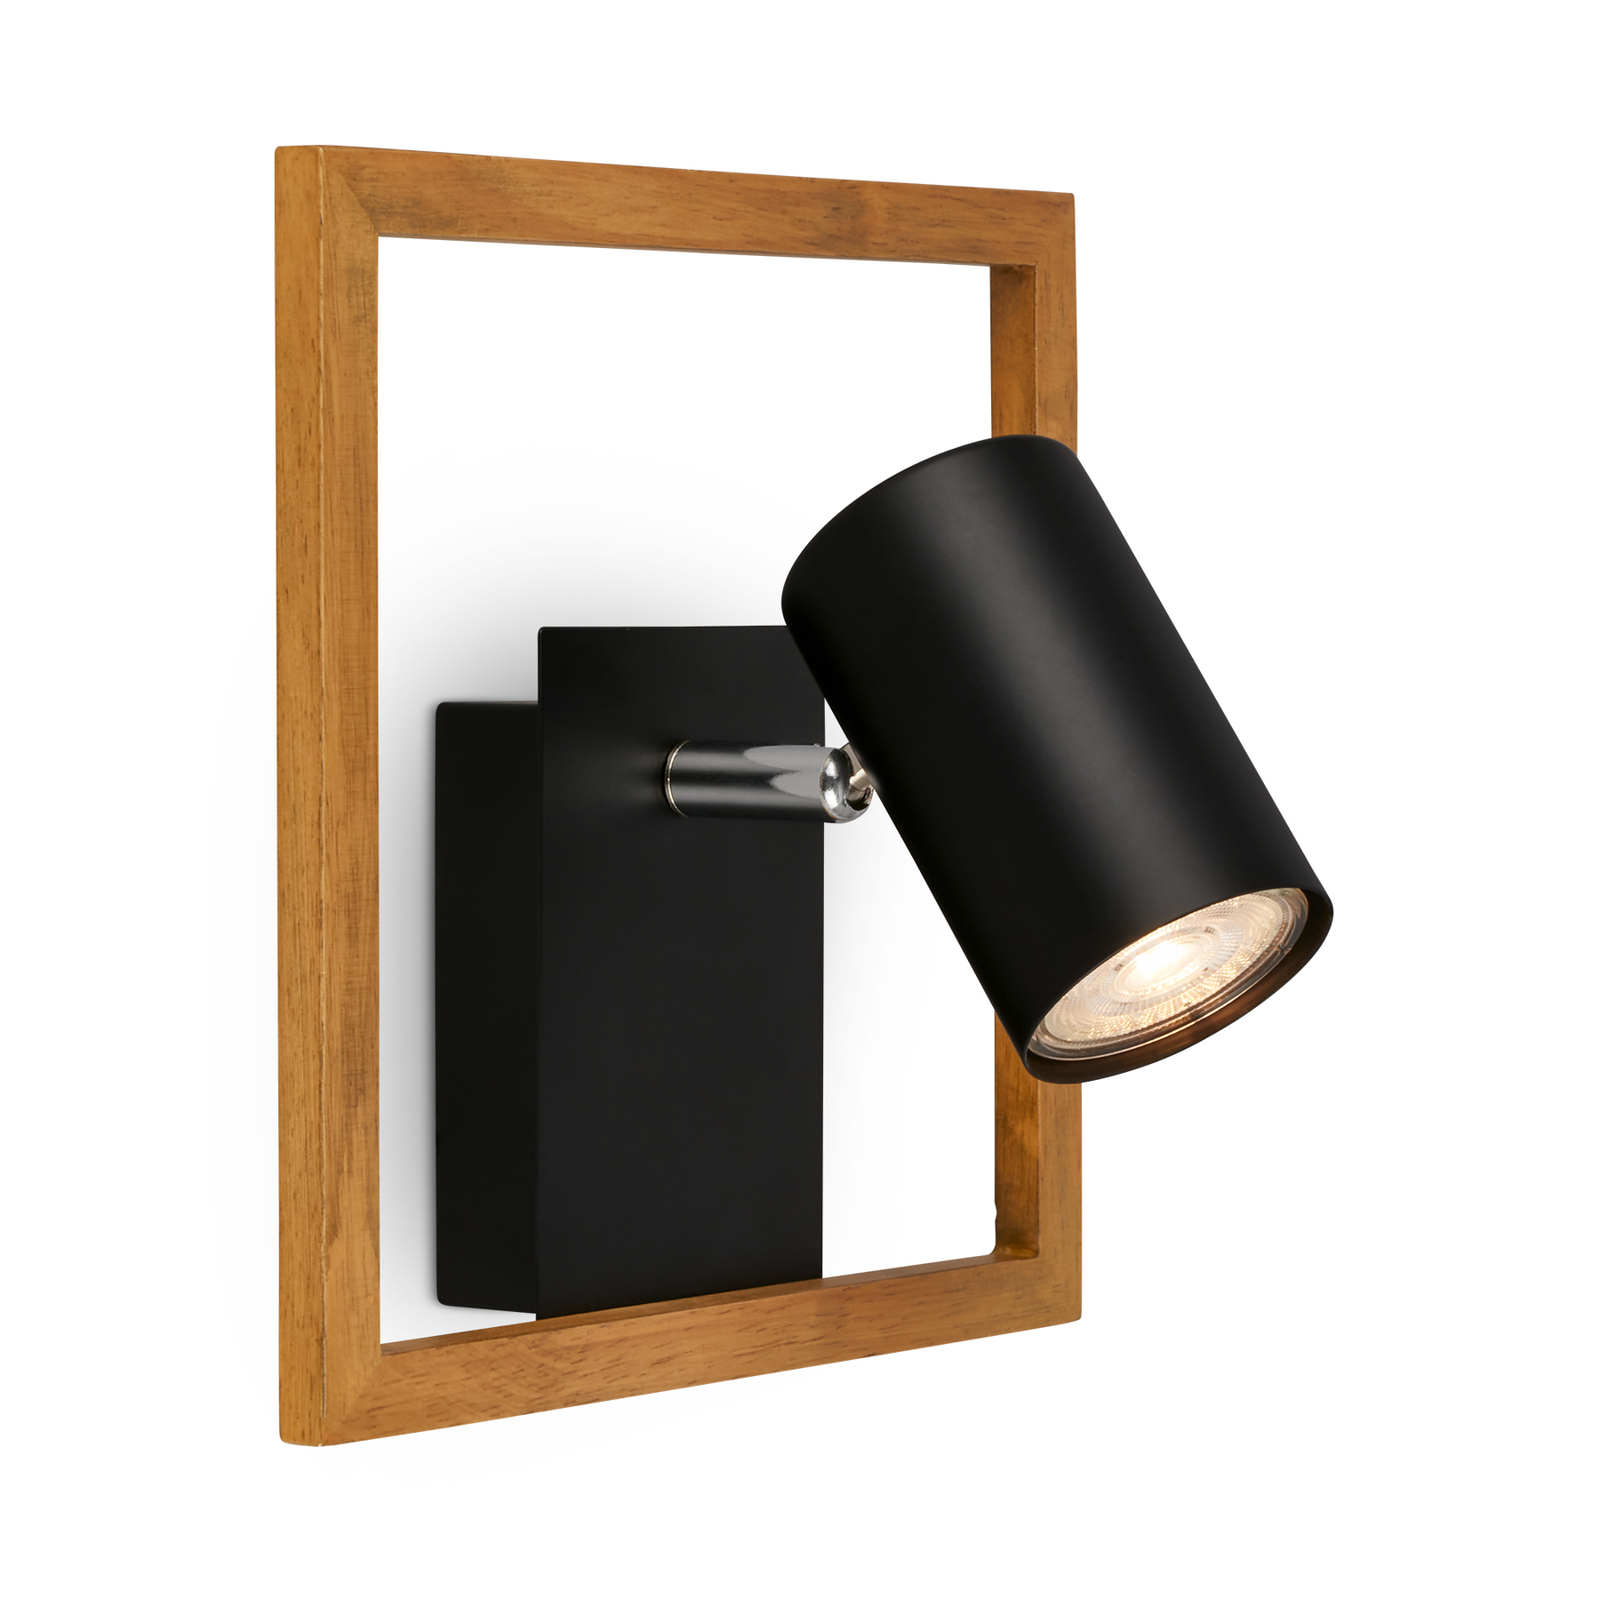 Zidni reflektor 2138015 u crnoj boji s drvenim okvirom